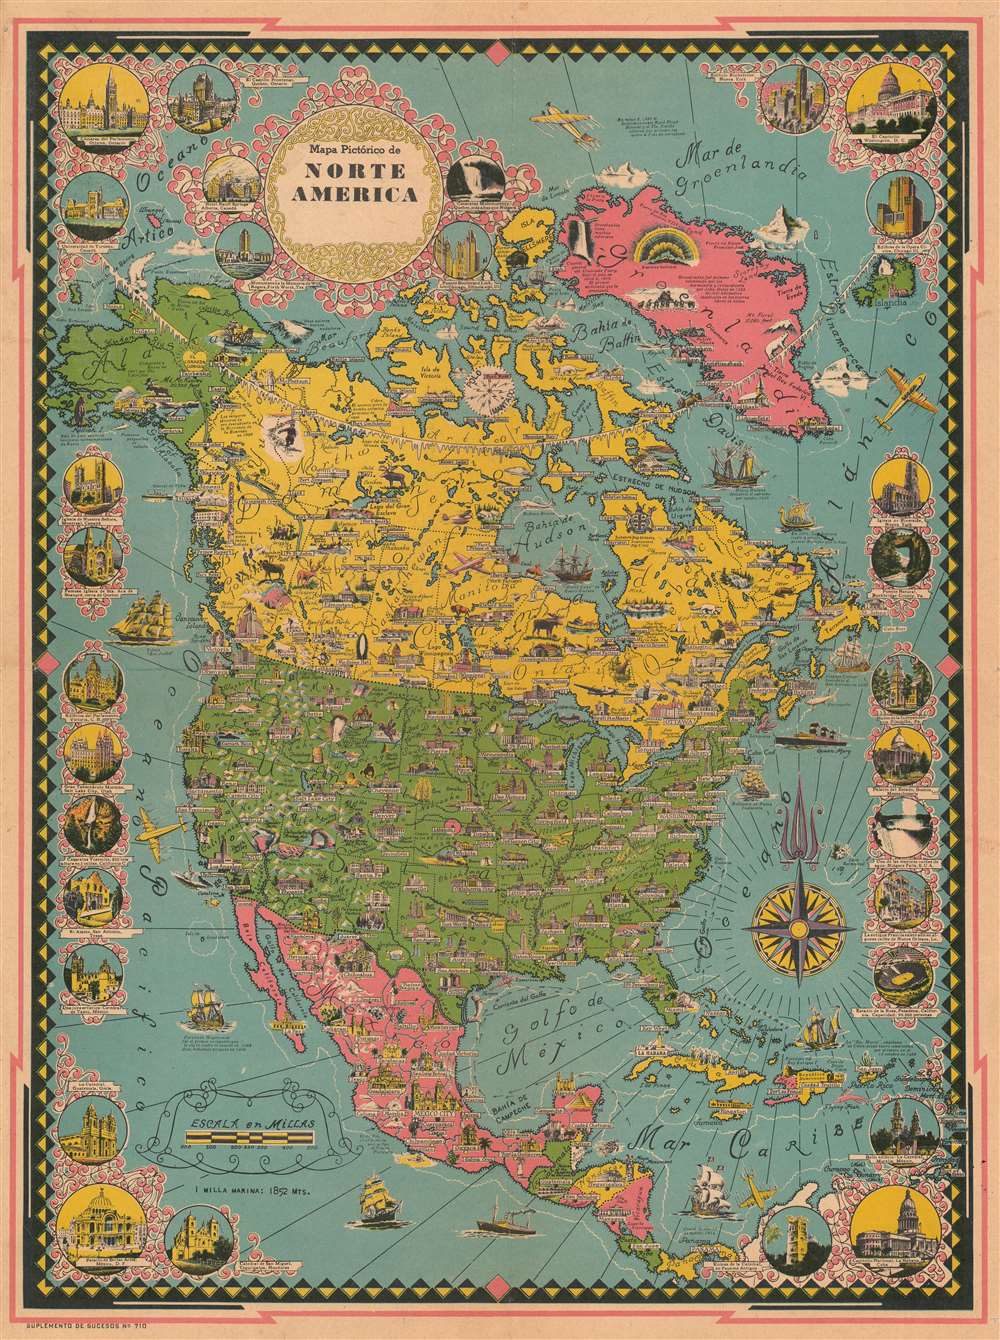 Mapa Pictórico de Norte America. - Main View